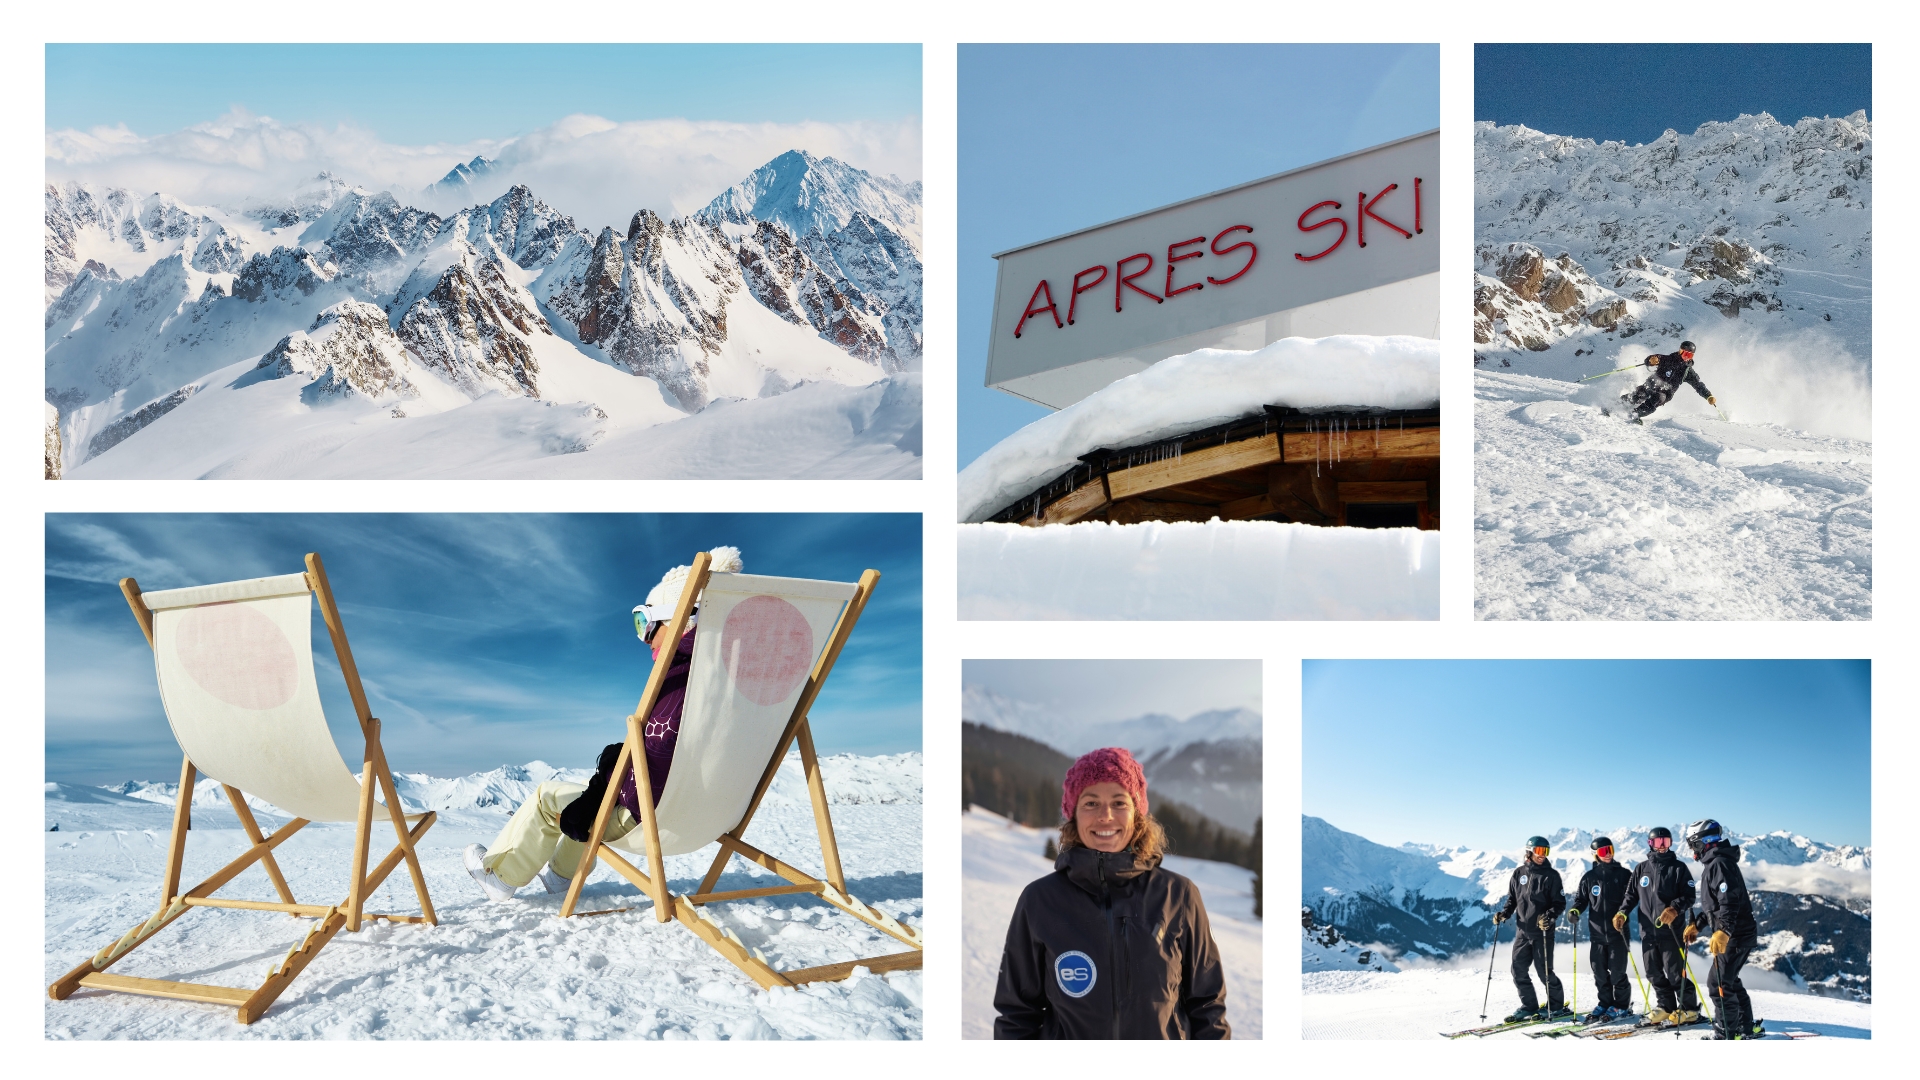 Collage of Ski Instructors, Landscape and Après ski Images